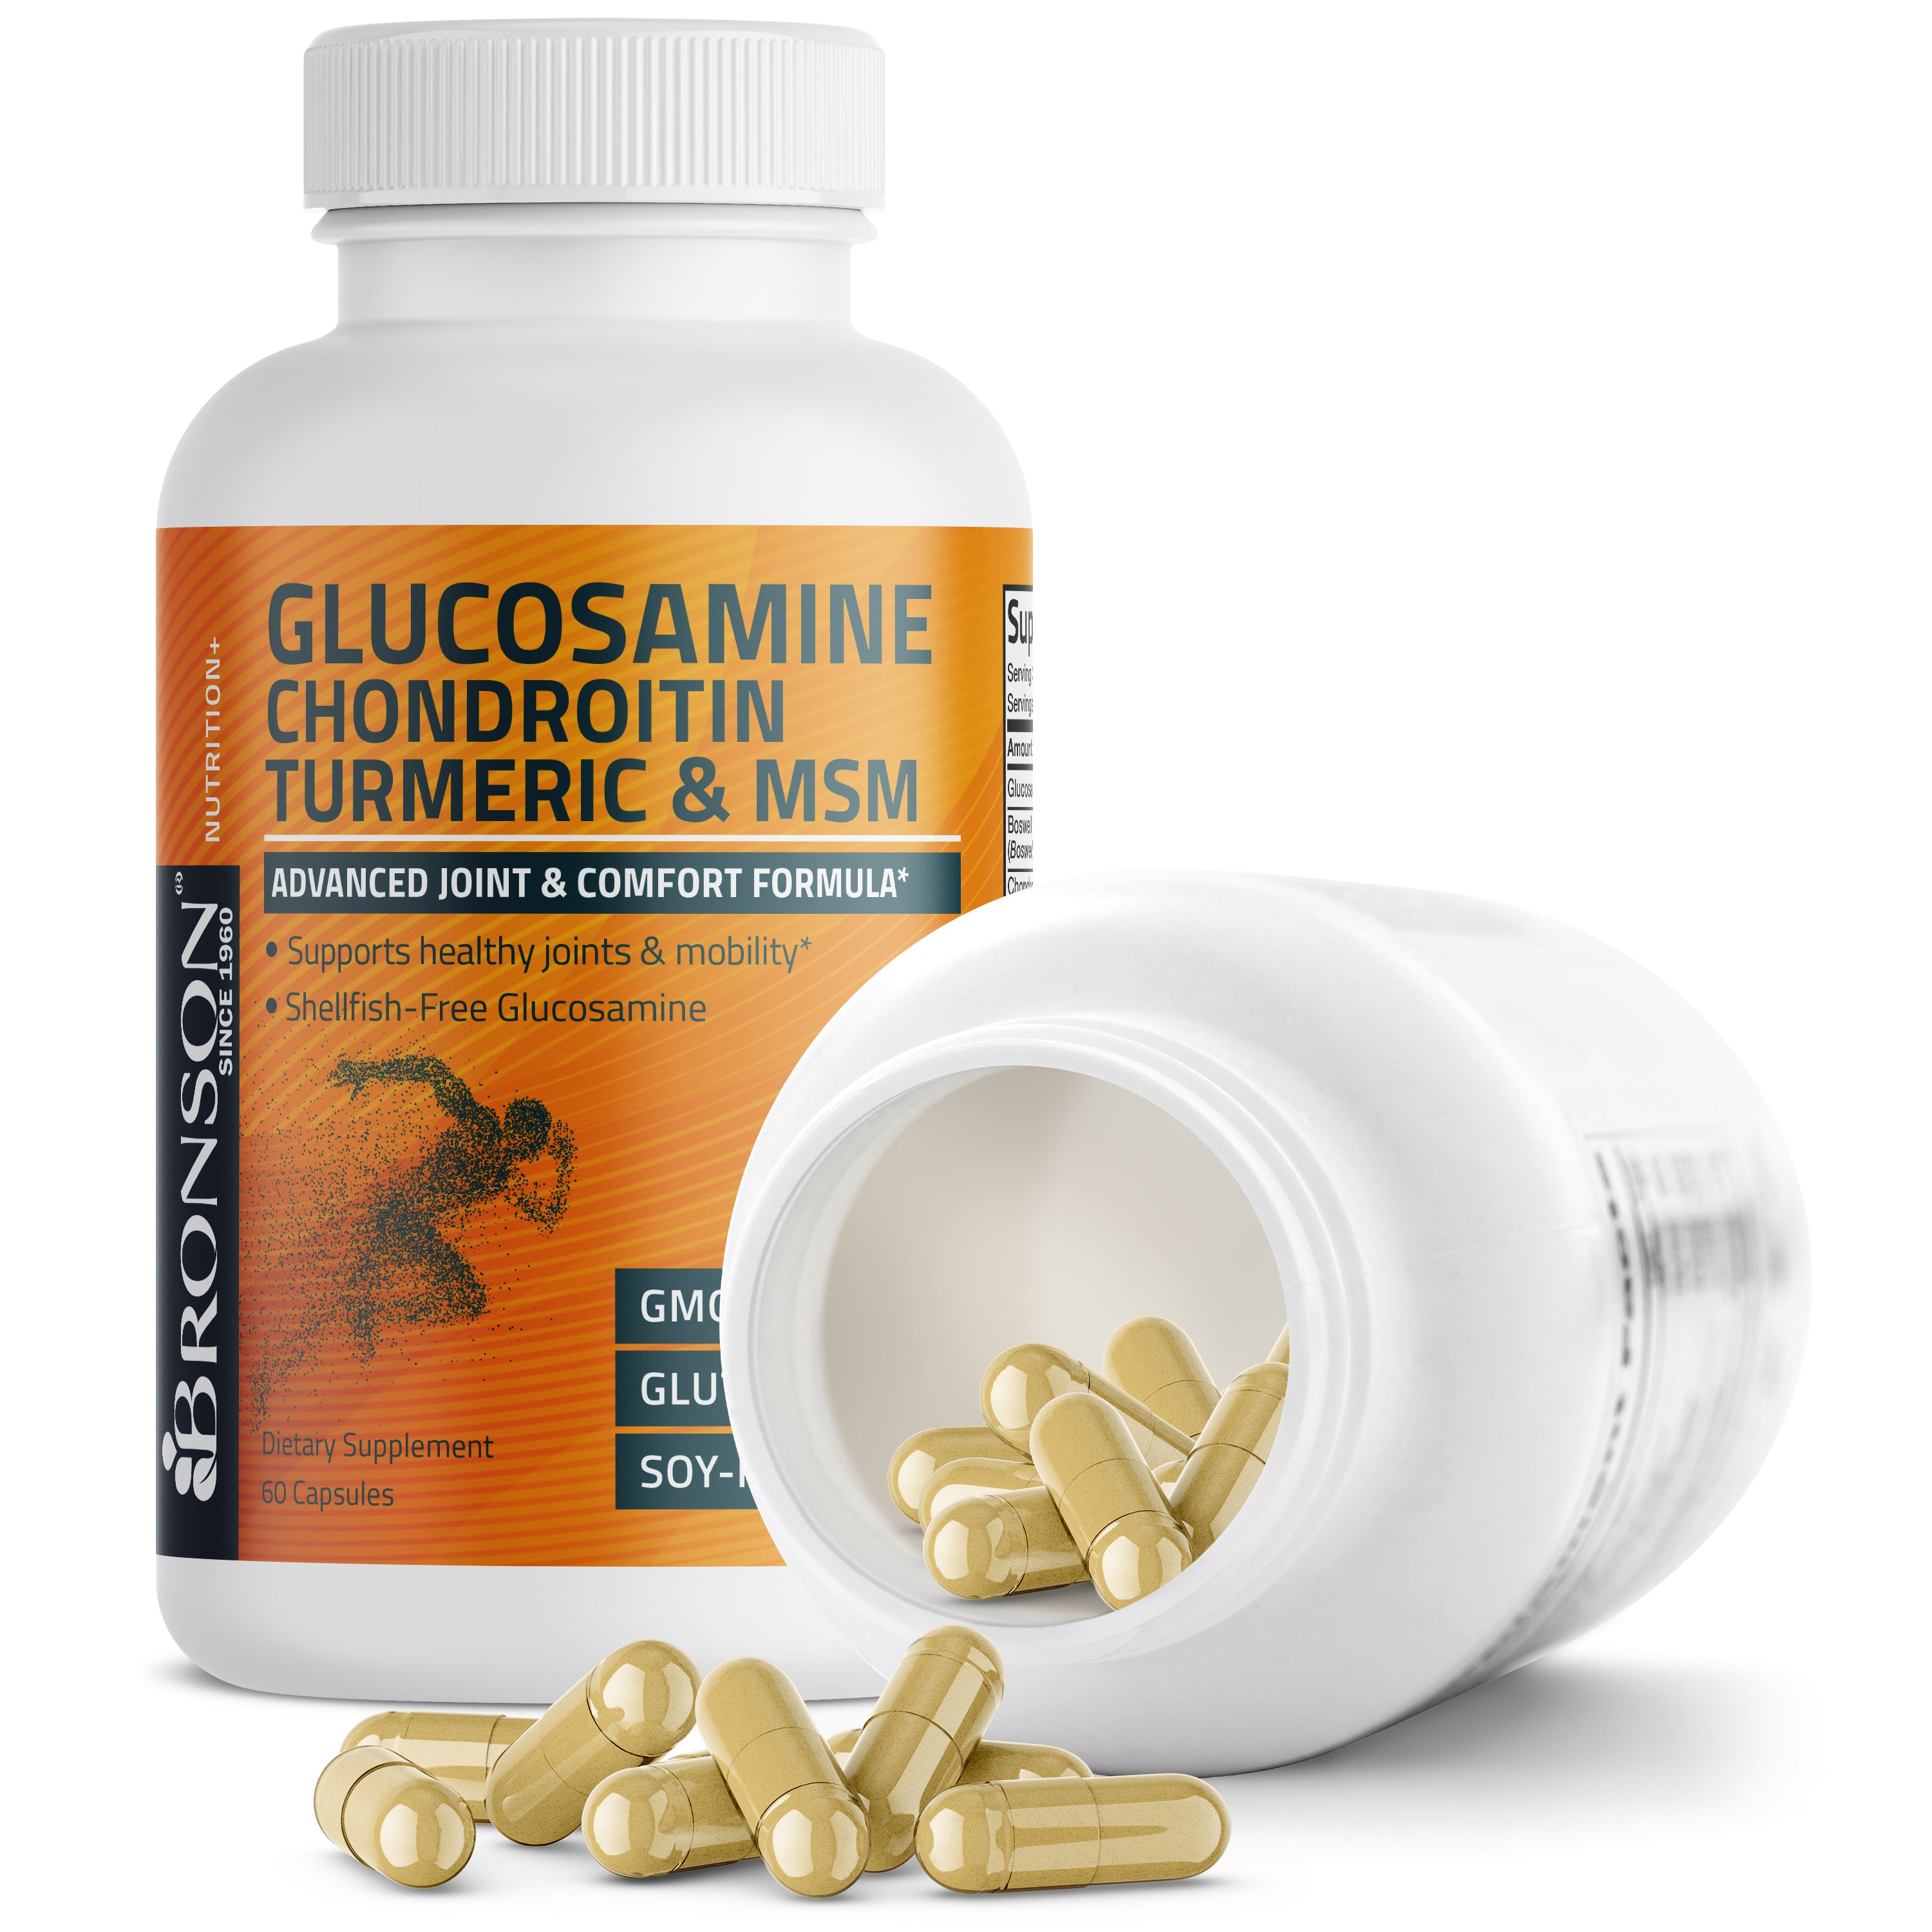 Glucosamine Chondroitin Turmeric & MSM view 22 of 6